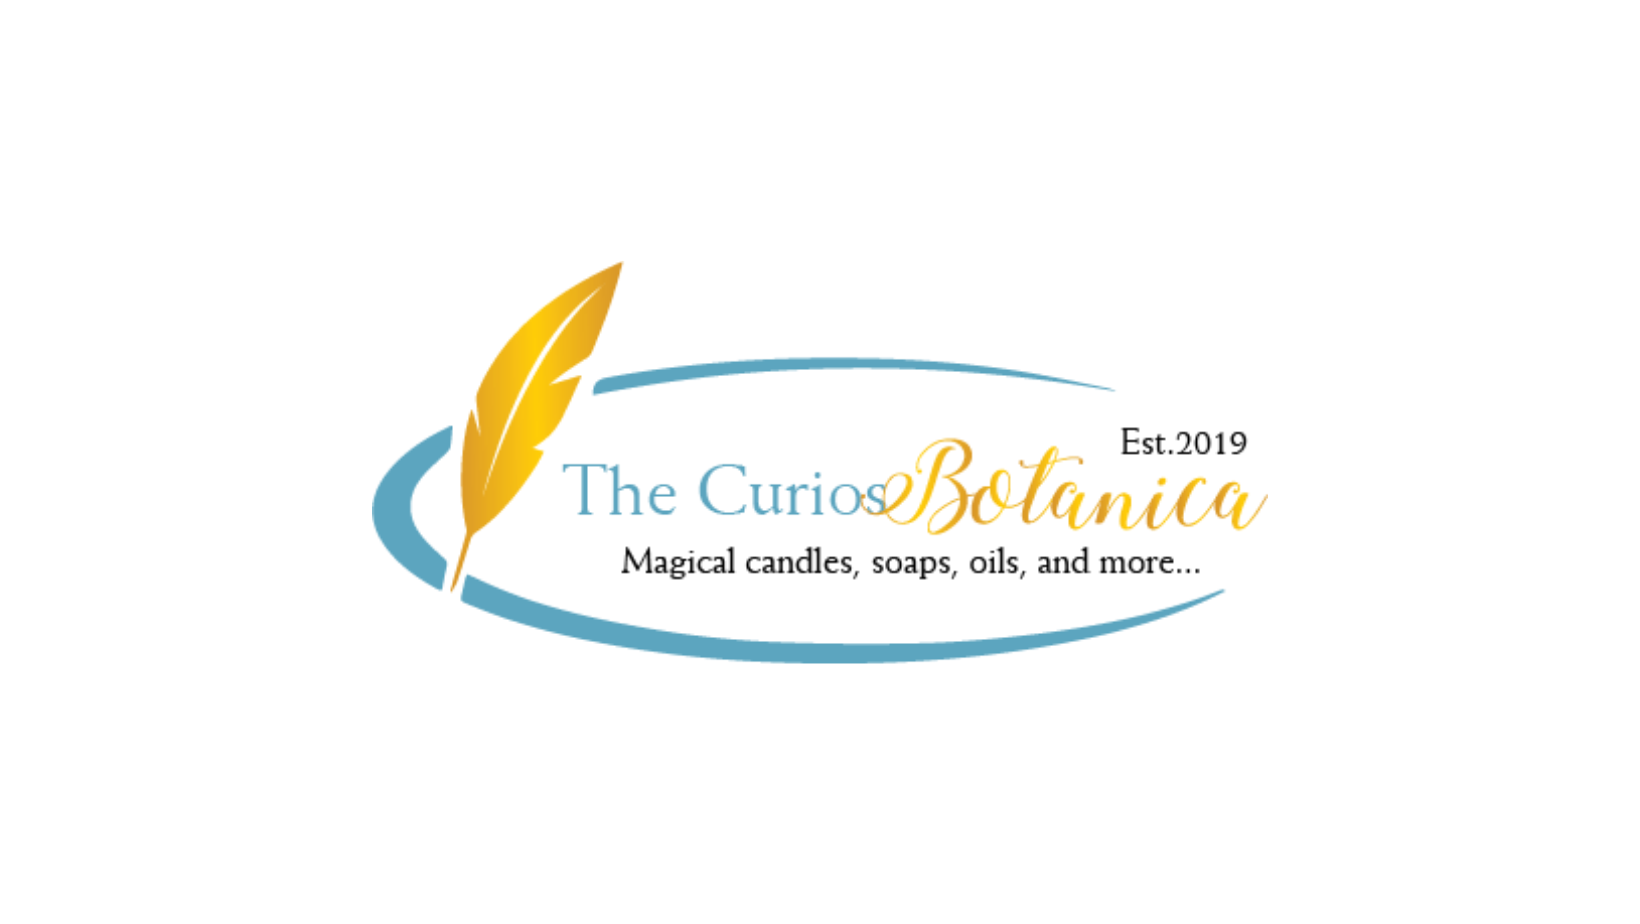 The Curios Botanica logo